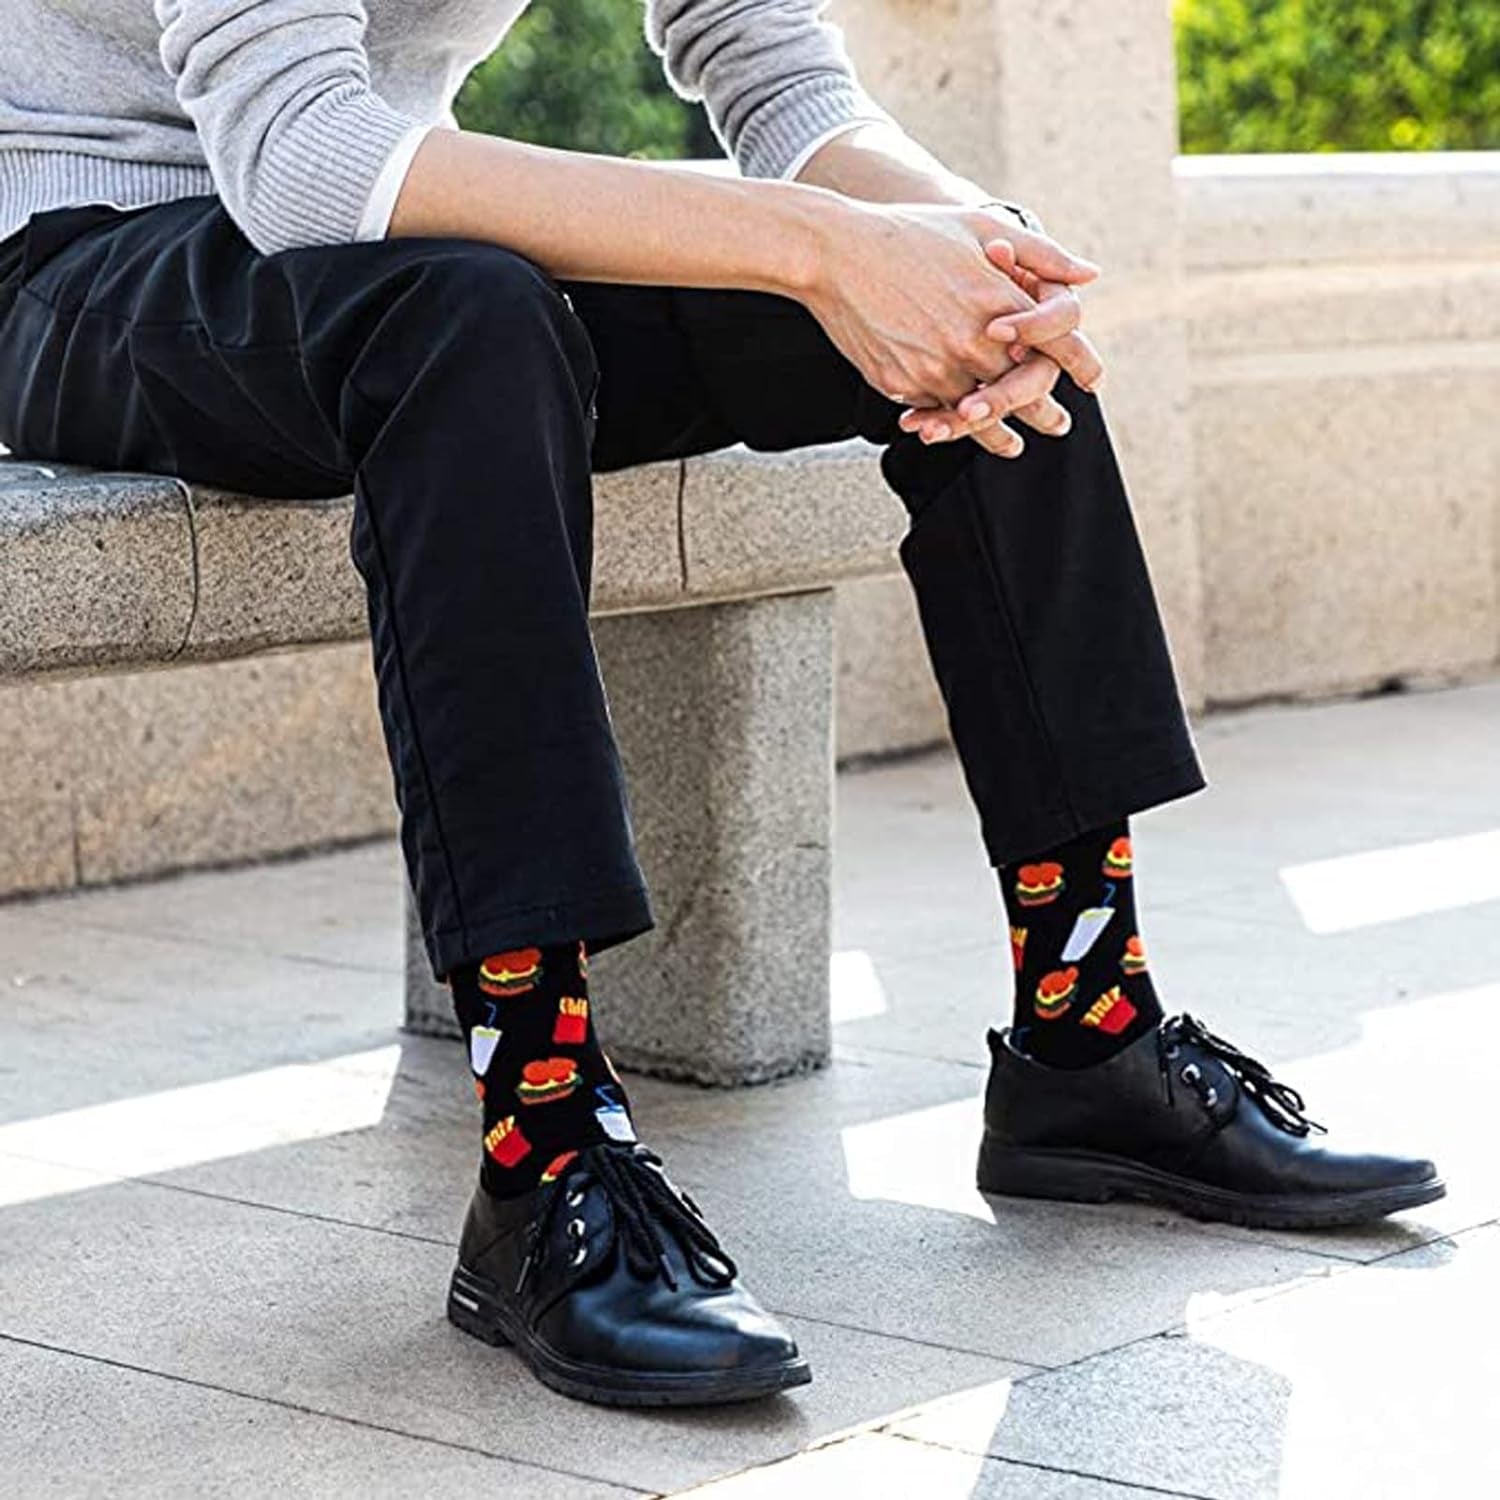 Mens Funny Pattern Dress Socks Crazy Design Cotton Socks Novelty Gifts for Men